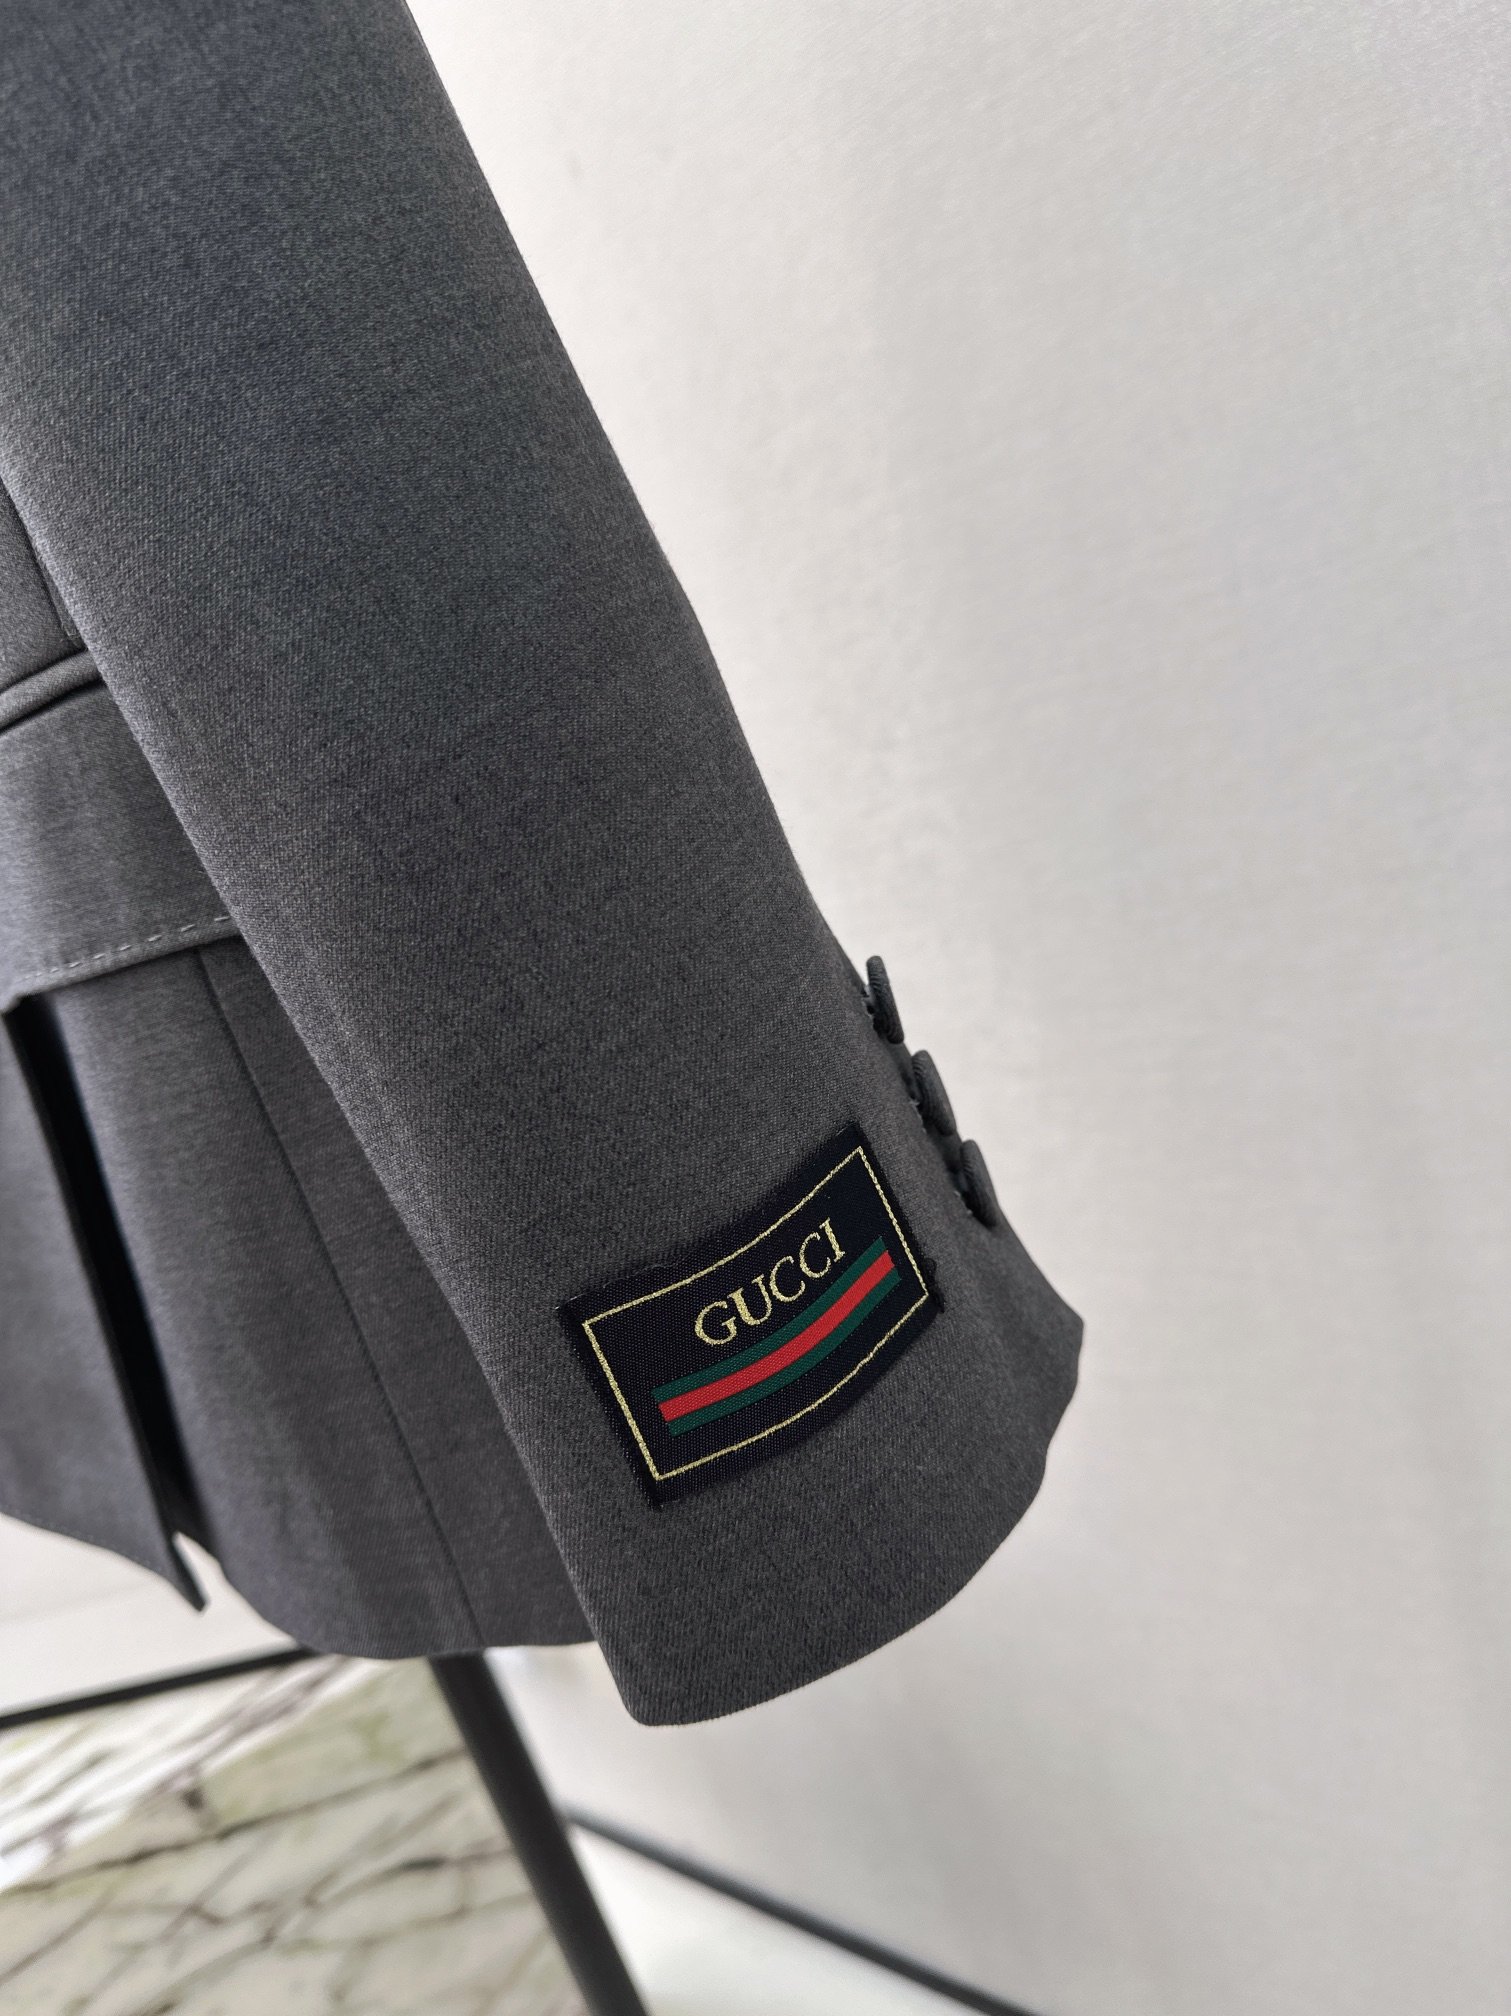 高级灰色系Gu24Ss早春最新款徽标装饰双排扣西服外套走路带风系列满满的高级感和气质范上身巨时髦大气经典